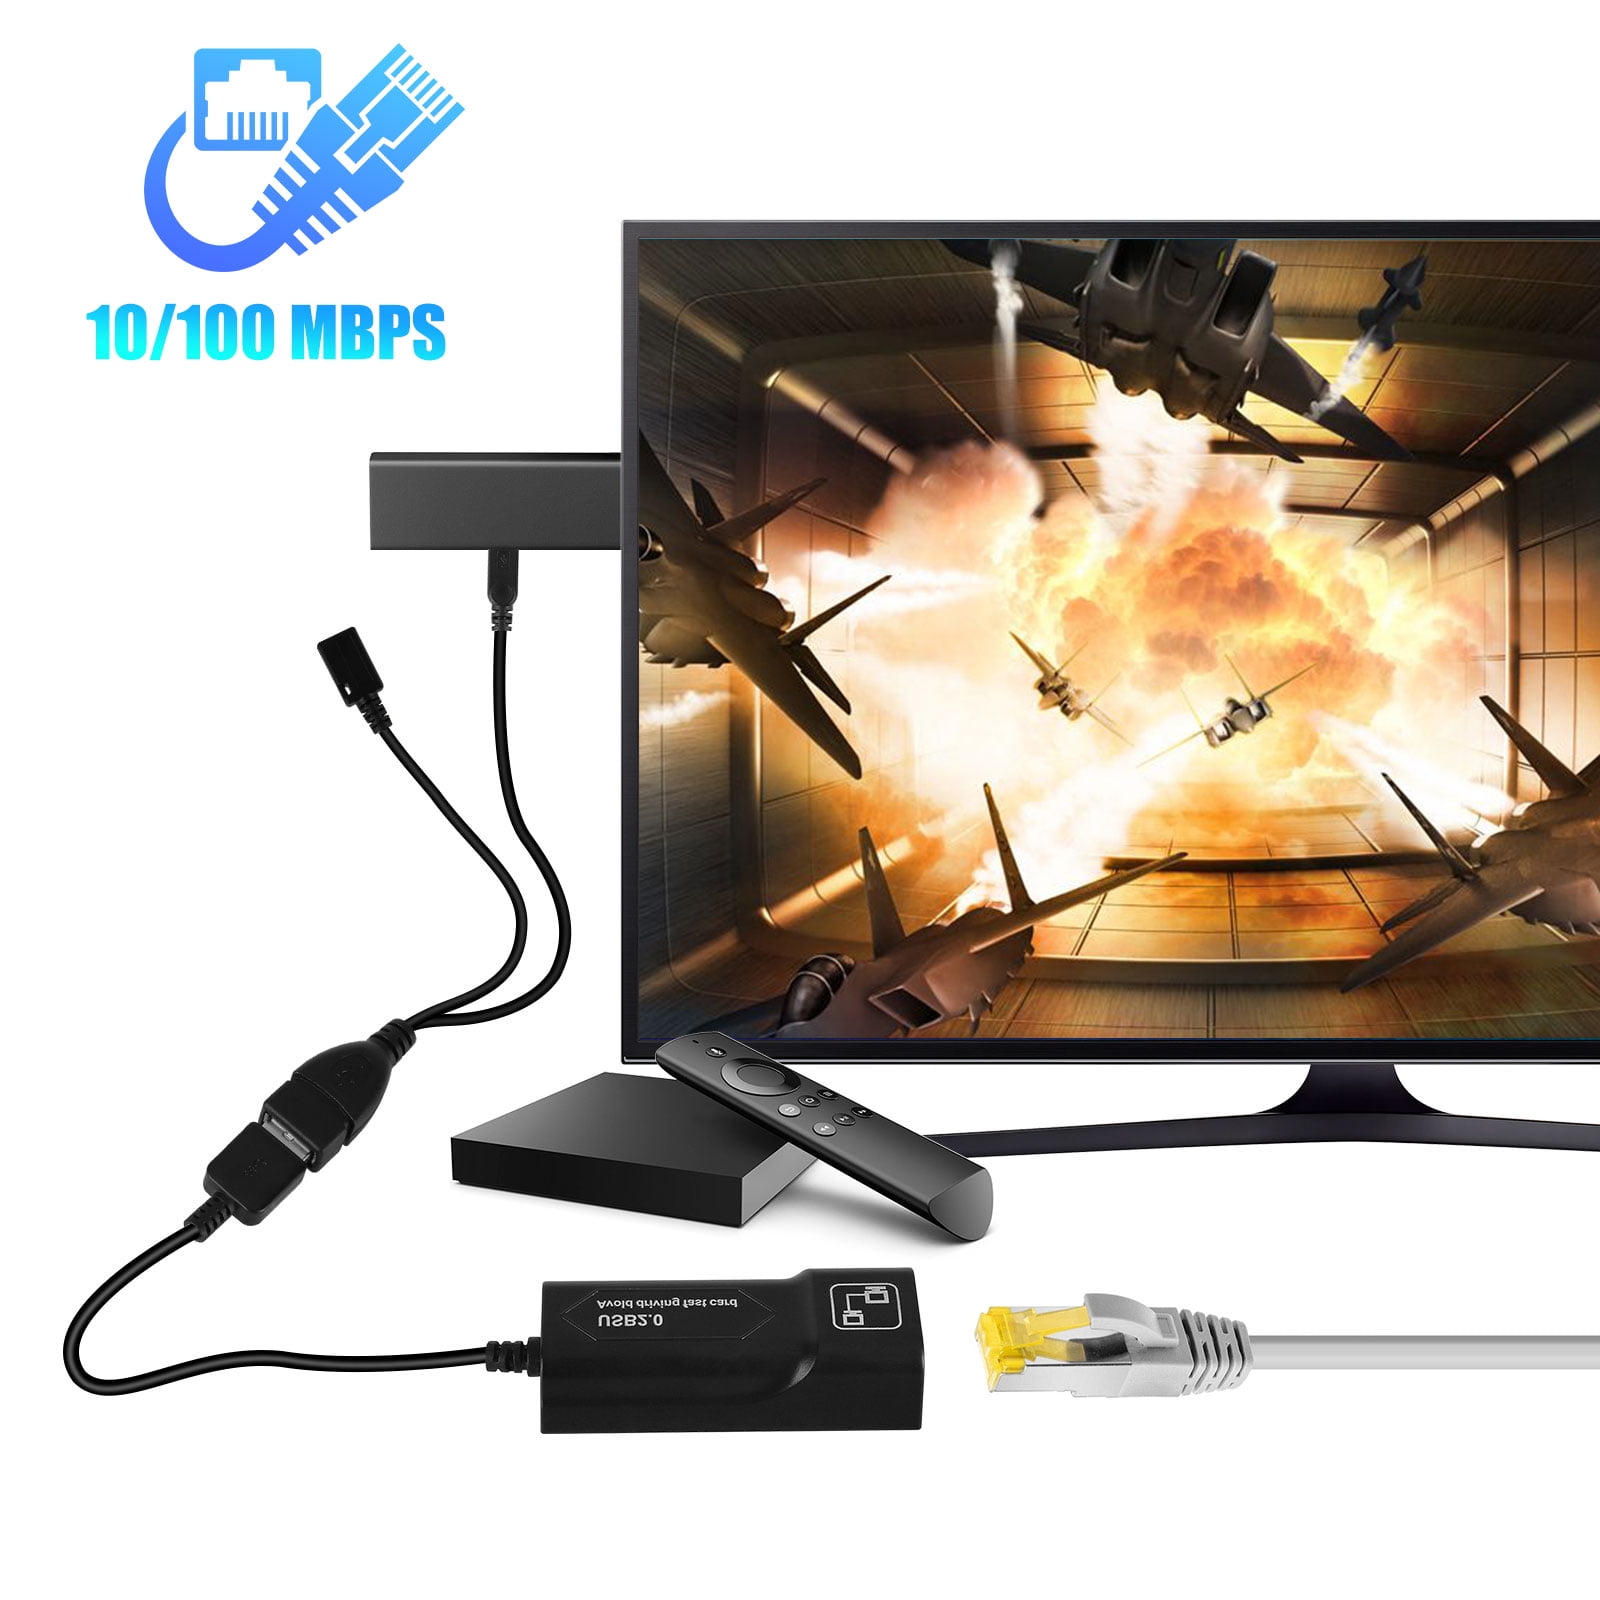 USB zu RJ45 Ethernet Adapter Netzwerk 10/100 Mbps kompatibel mit MacBook XP Surface Pro 3 7 Ultrabook Windows 10 Wii Wii U und viele mehr Vista Linux LAN Adapter USB 2.0 8.1 JAMEGA 8